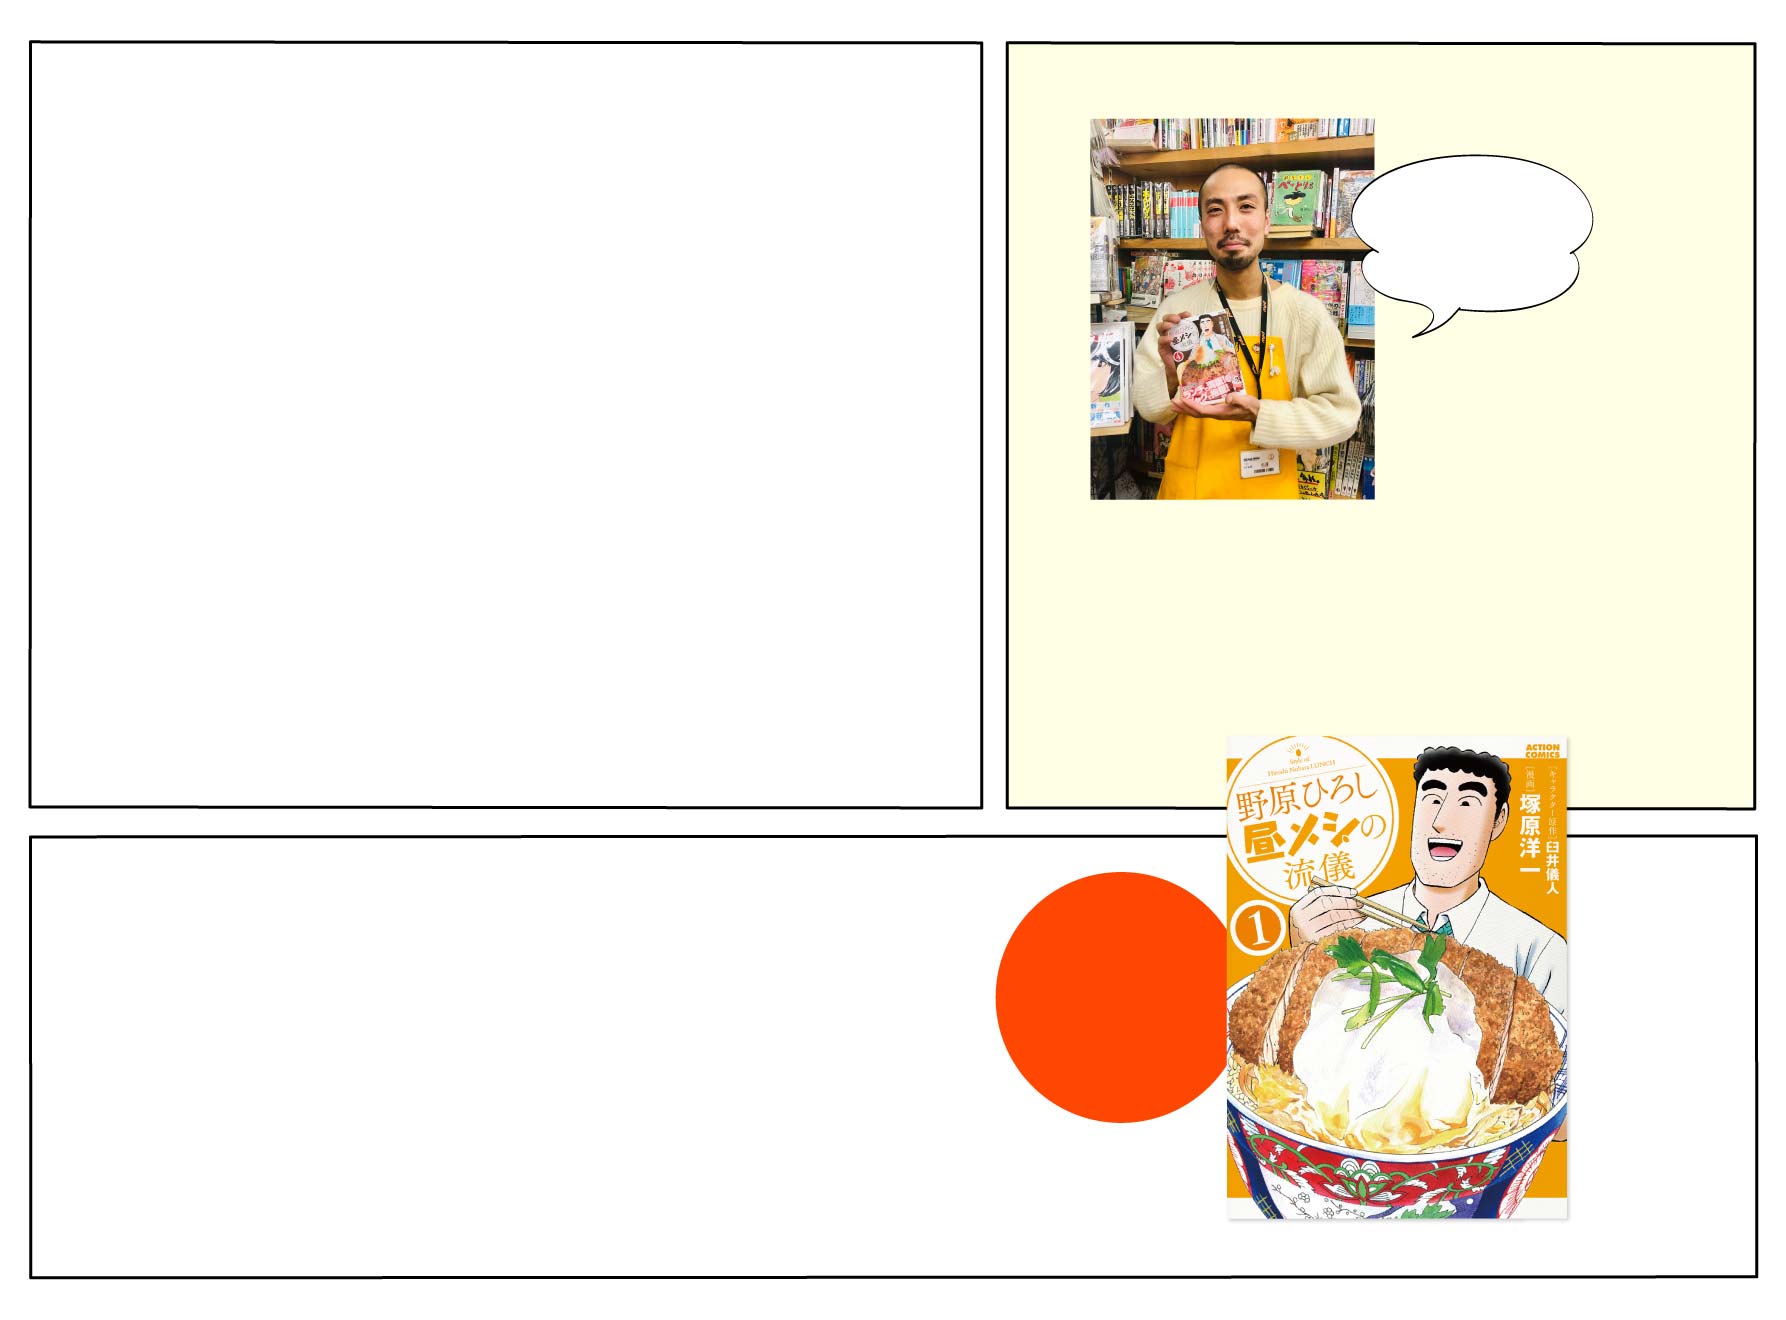 上：コミック選者の中澤 孝紀さん　下：「野原ひろし 昼メシの流儀」の書影